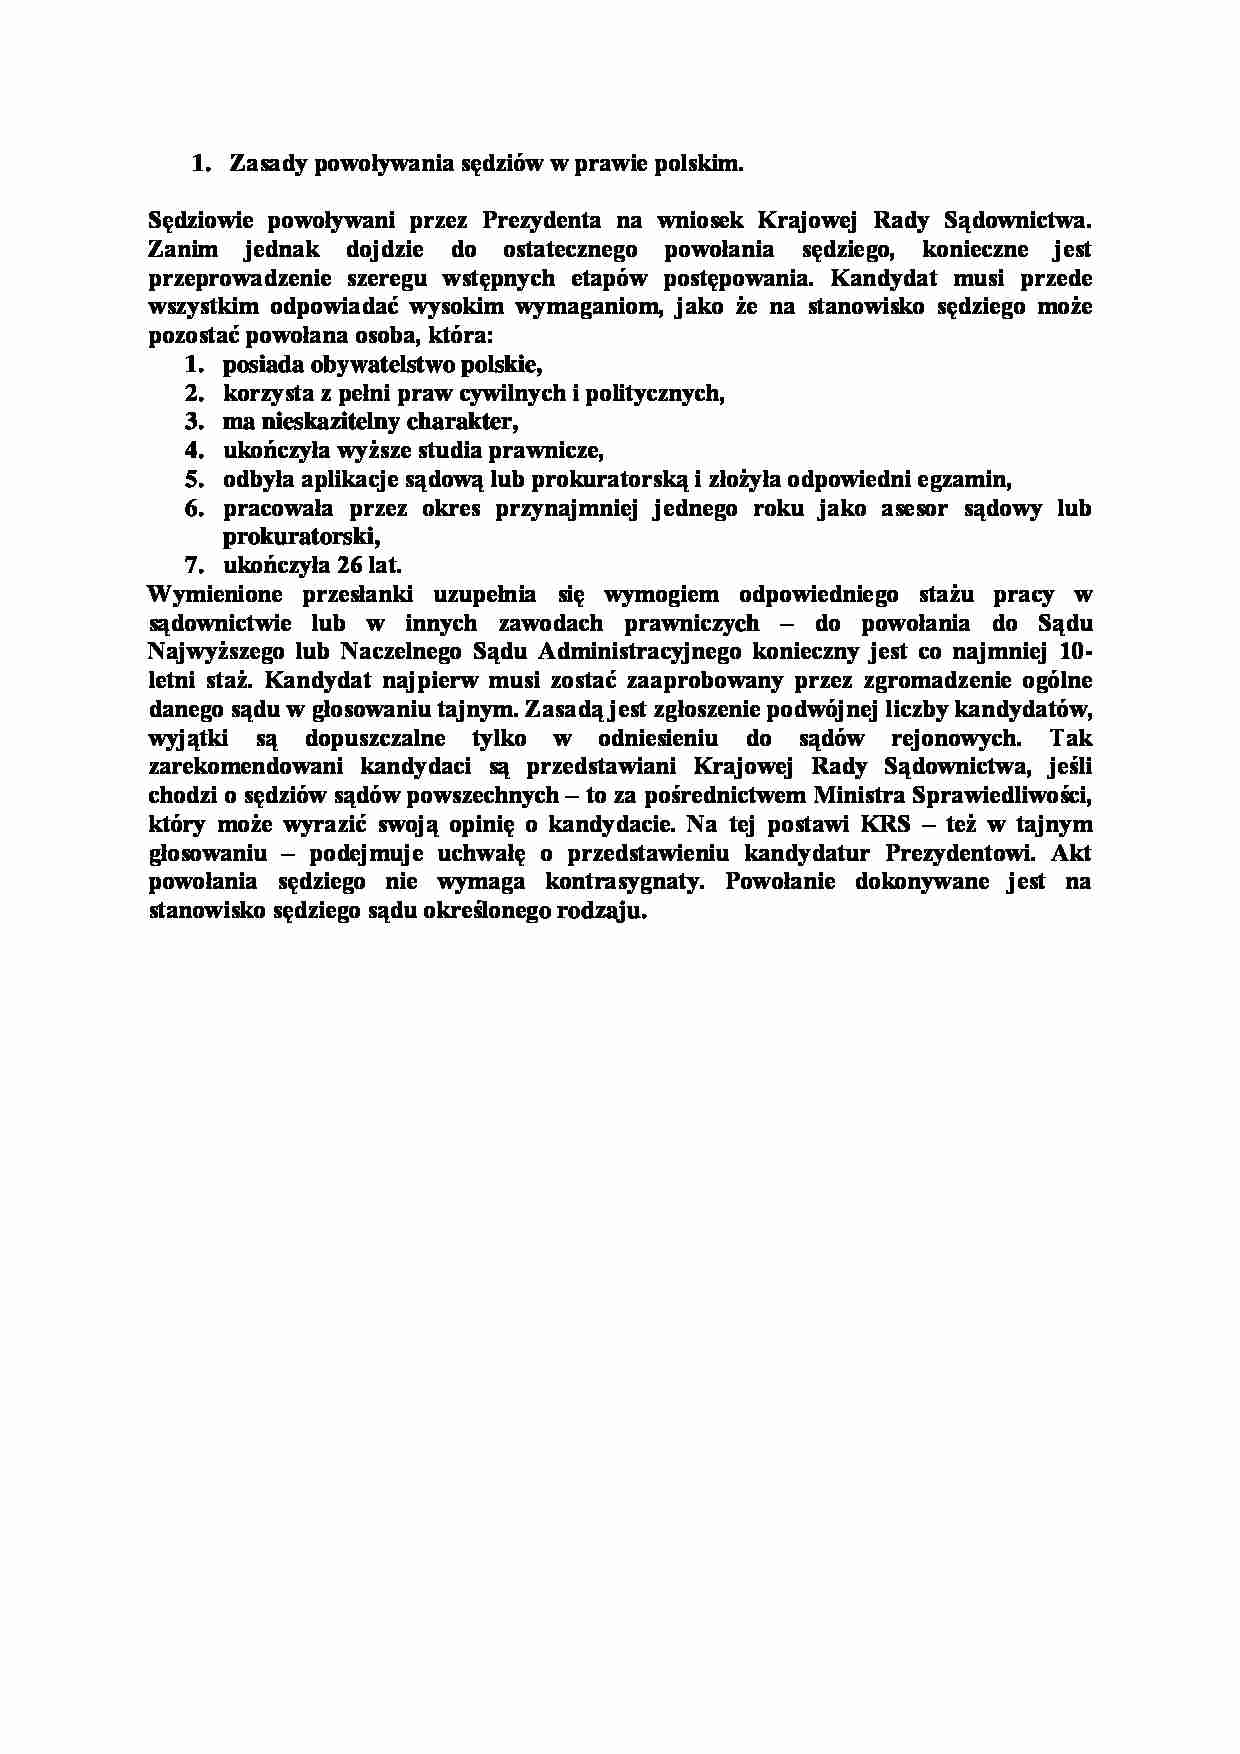 Zasady powoływania sędziów w prawie polskim-opracowanie - strona 1